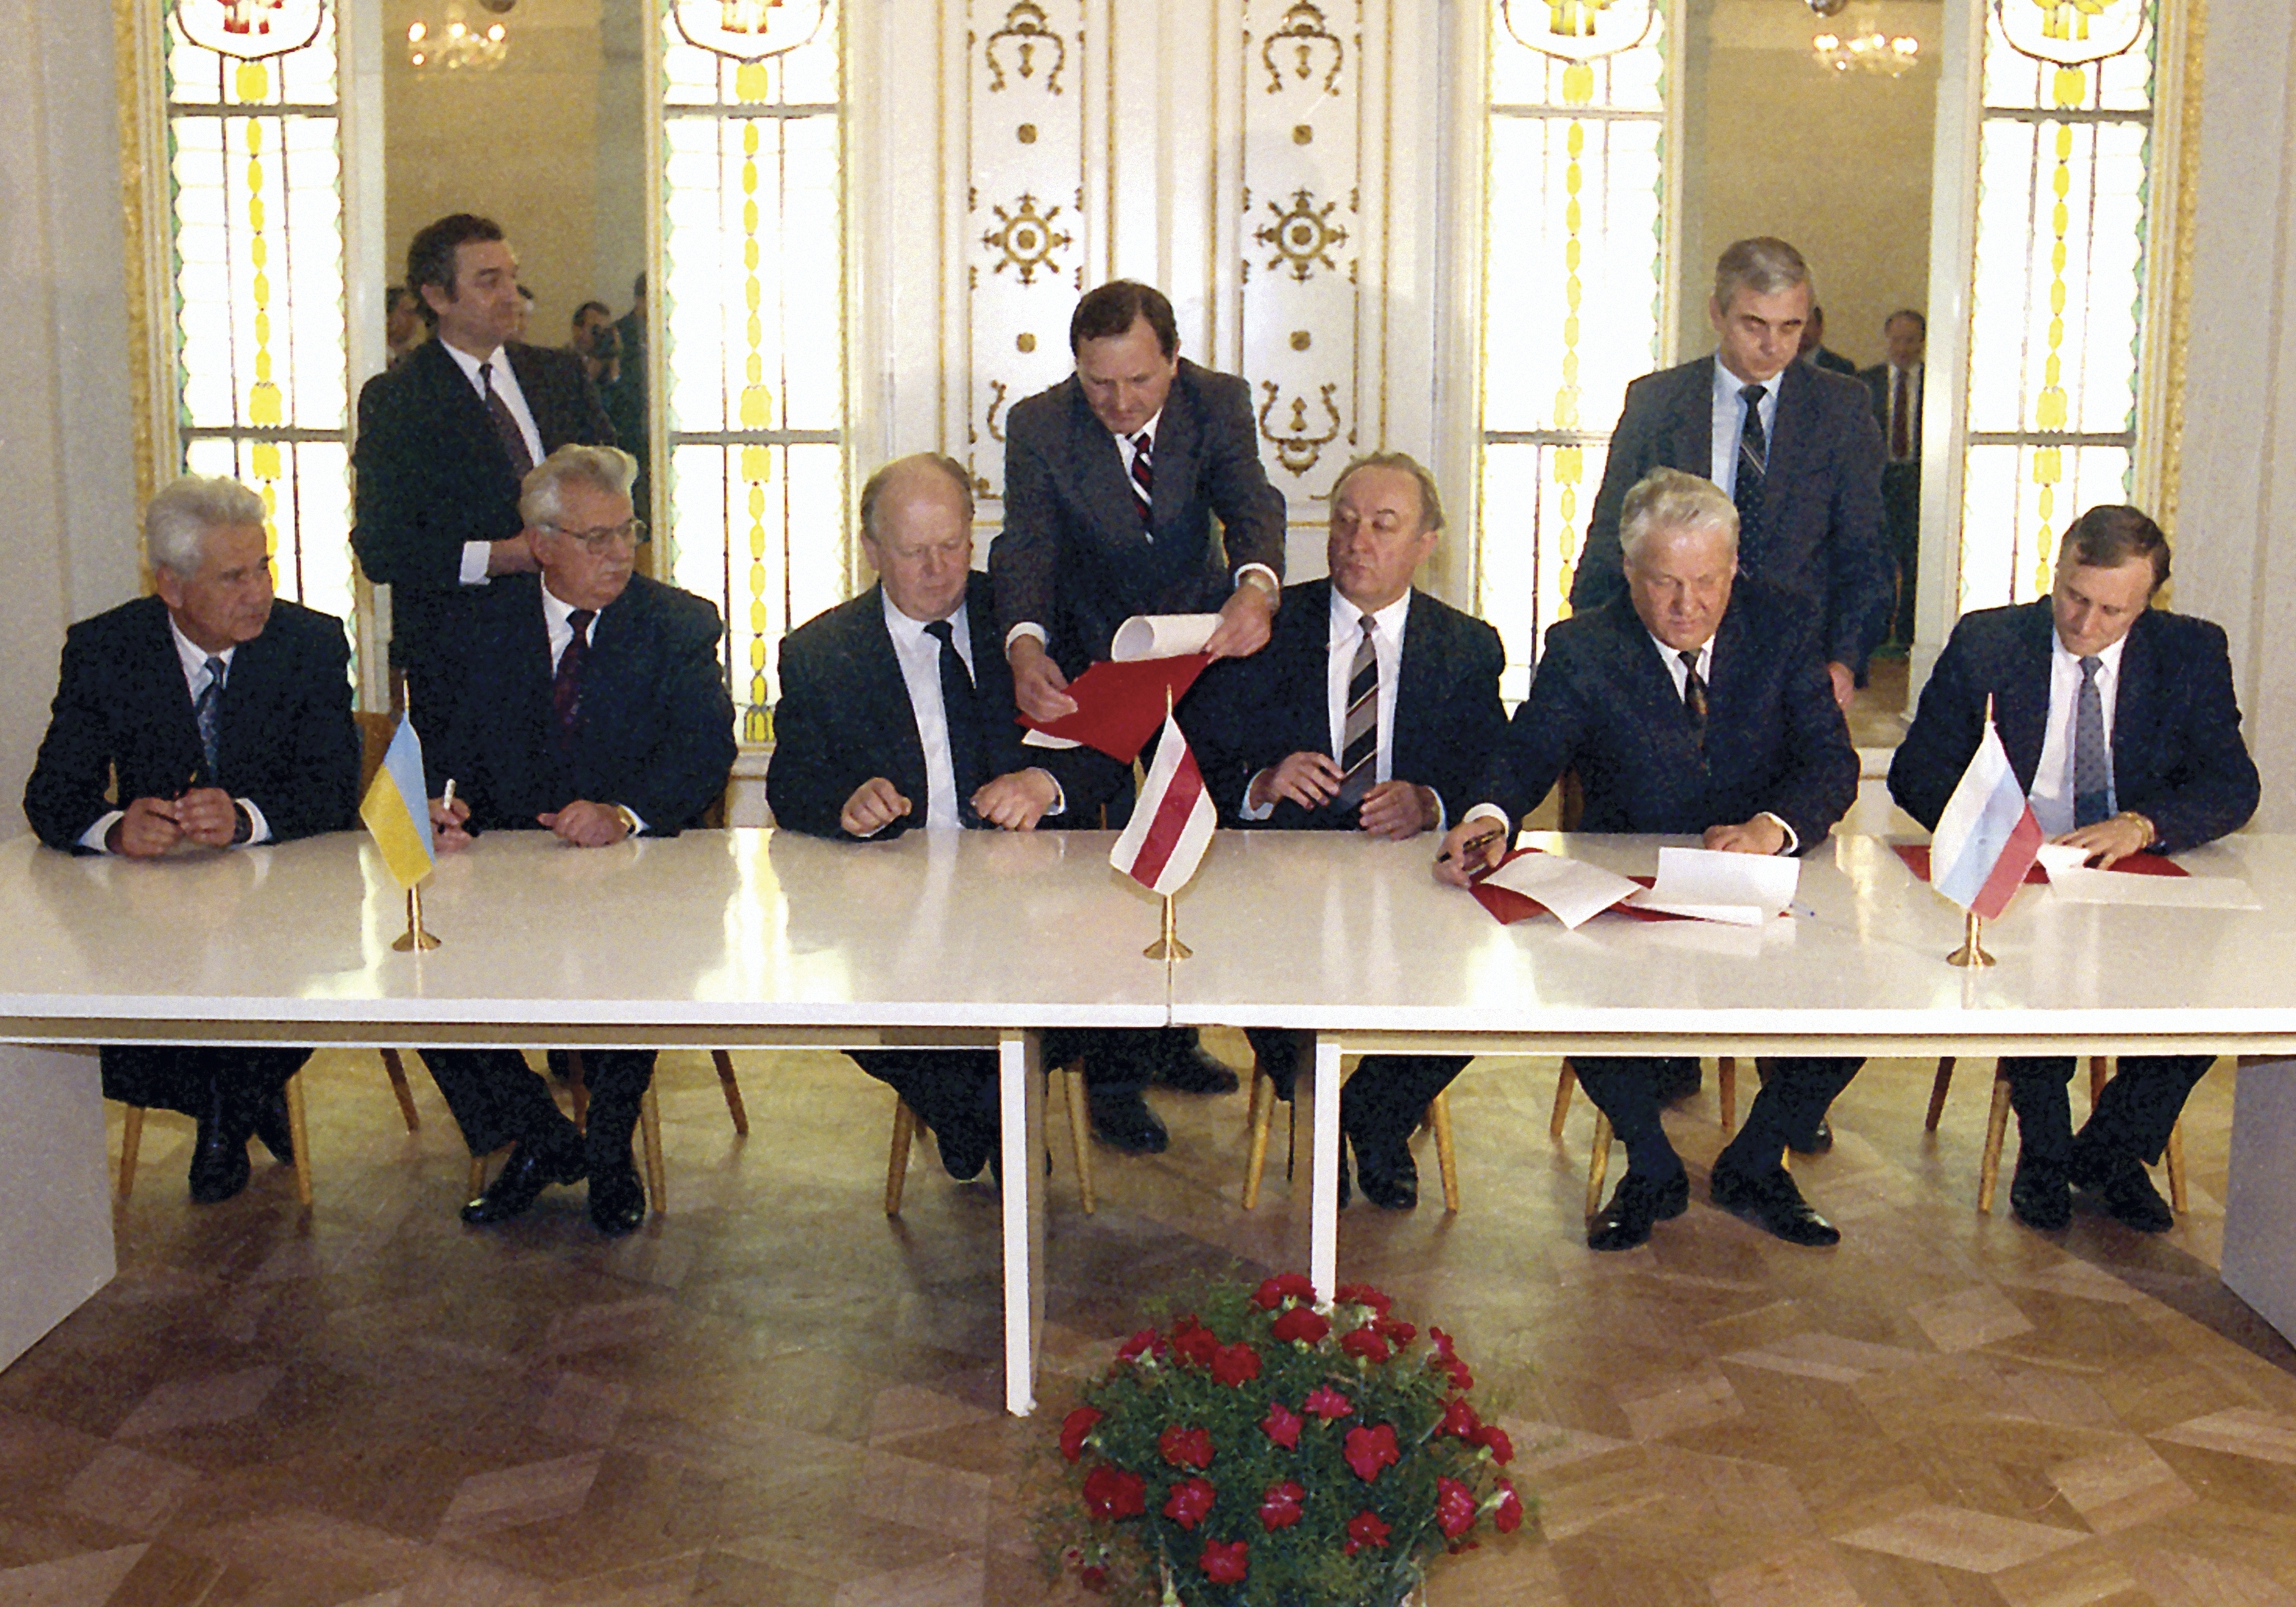 ARCHIVO - El presidente de Rusia, Boris Yeltsin, segundo a la derecha, el presidente de Ucrania, Leonid Kravchuk, segundo a la izquierda, el líder de Bielorrusia, Stanislav Shushkevich, tercero a la izquierda, el secretario de Estado de Rusia, Gennady Burbulis, a la derecha, el primer ministro de Bielorrusia, Vyacheslav Kebich, tercero a la derecha, y el primer ministro de Ucrania, Vitold Fokin, a la izquierda, firma un acuerdo que pone fin a la Unión Soviética y declara la creación de la Comunidad de Estados Independientes en Viskuli, Bielorrusia, el 8 de diciembre de 1991.